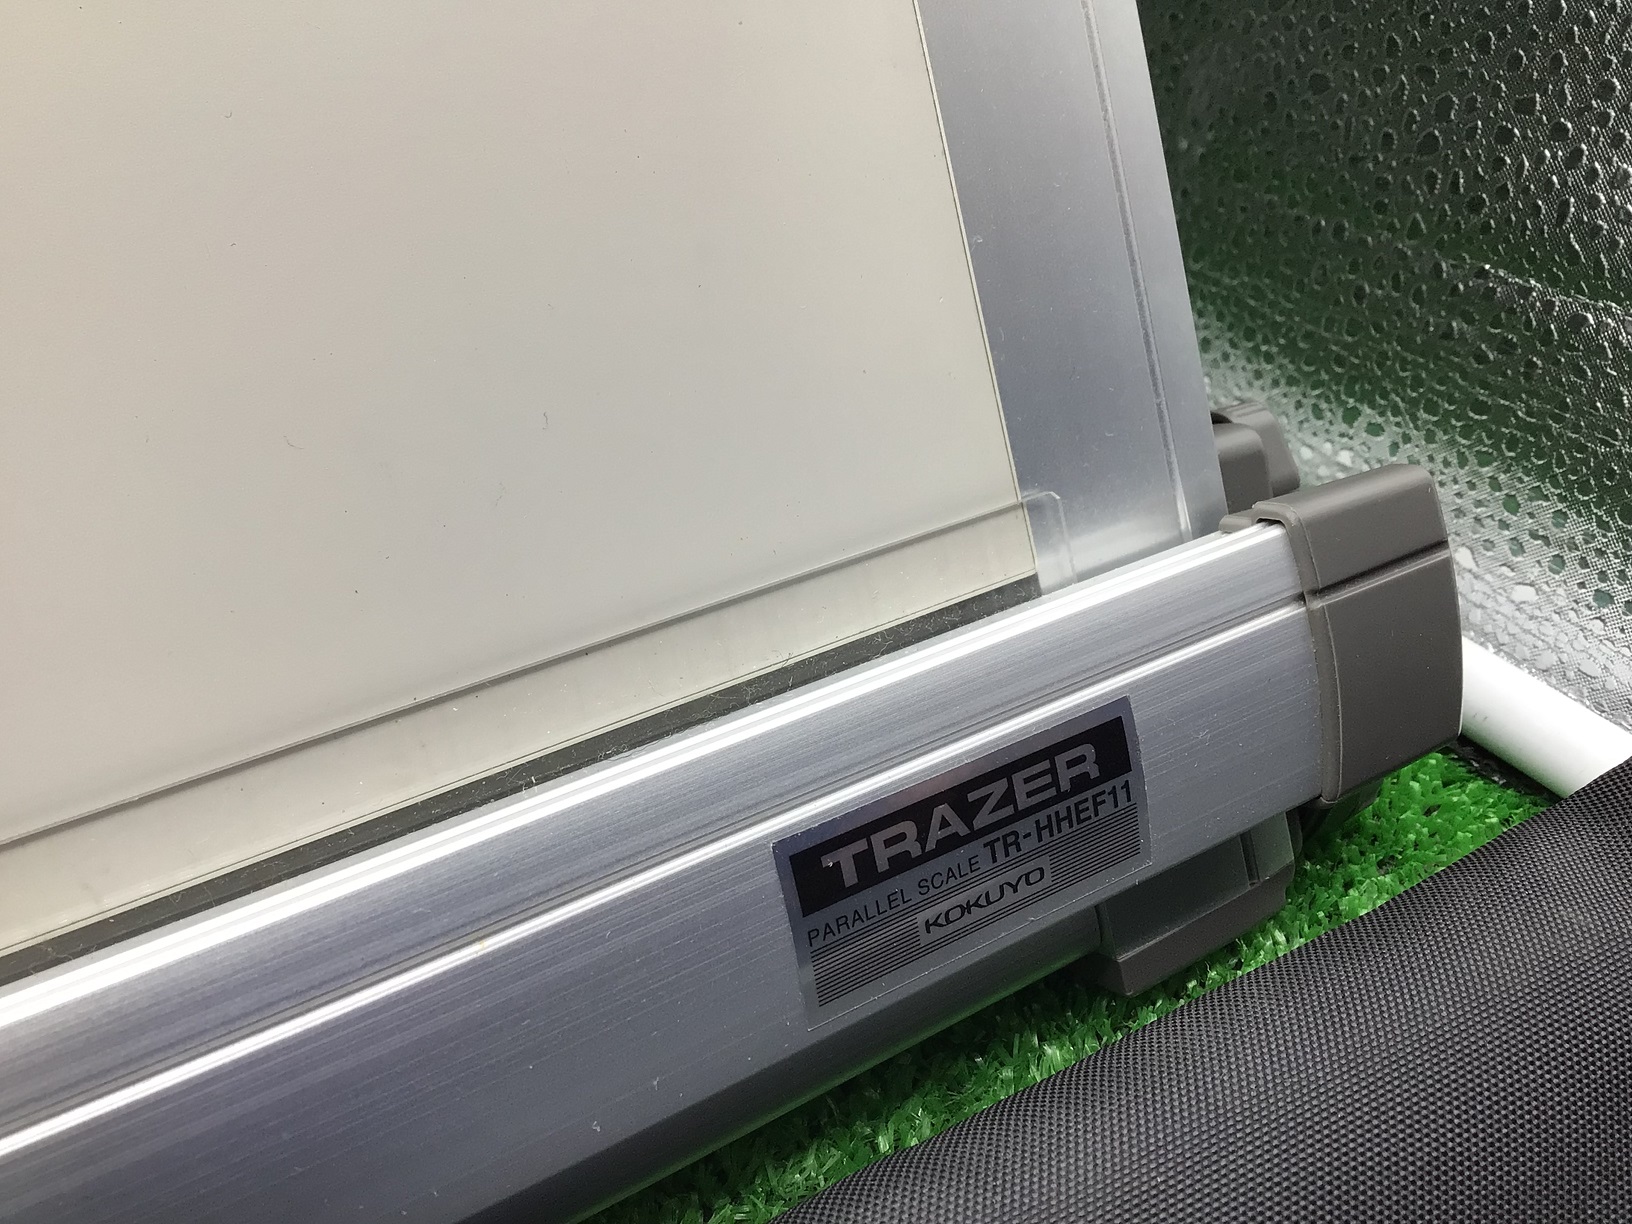 コクヨ トレイザー 平行定規 マグネット製図板 A2 TR-HHEF11を名古屋市